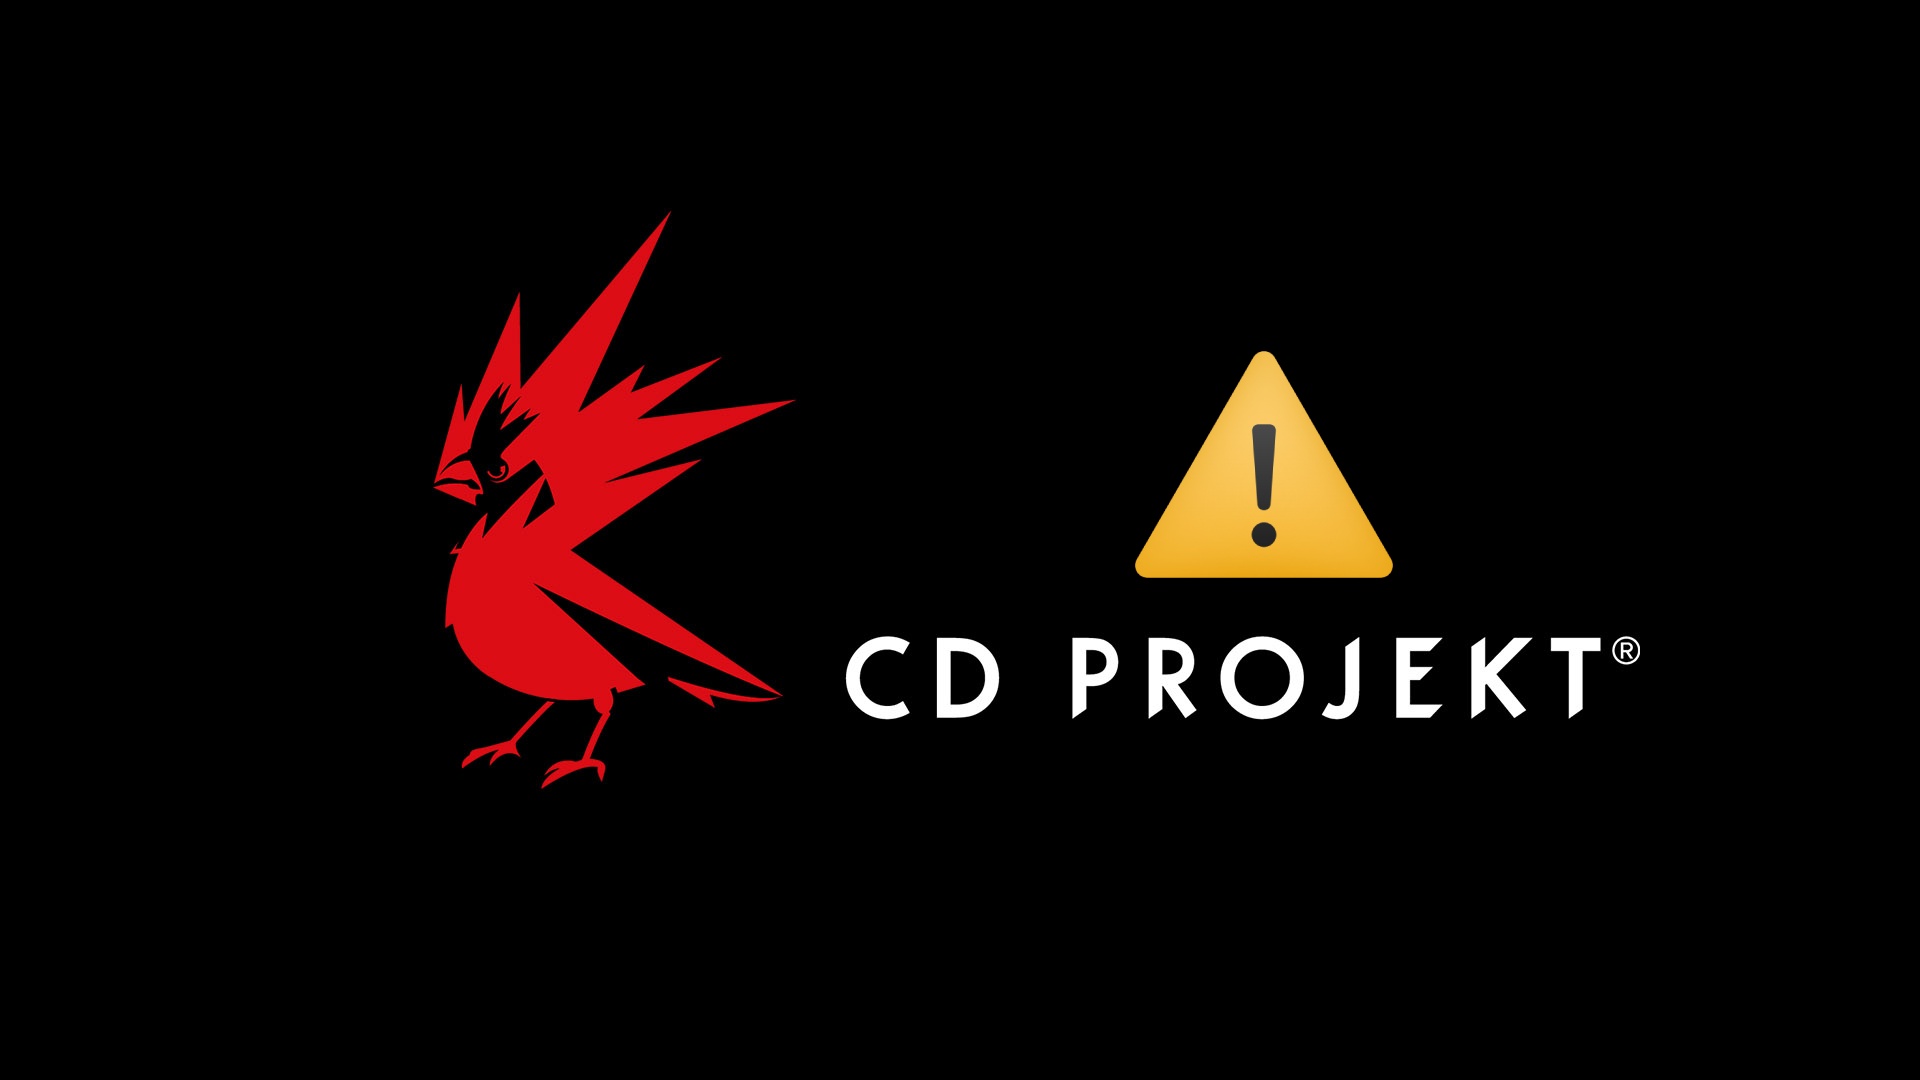 CD Projekt hackers